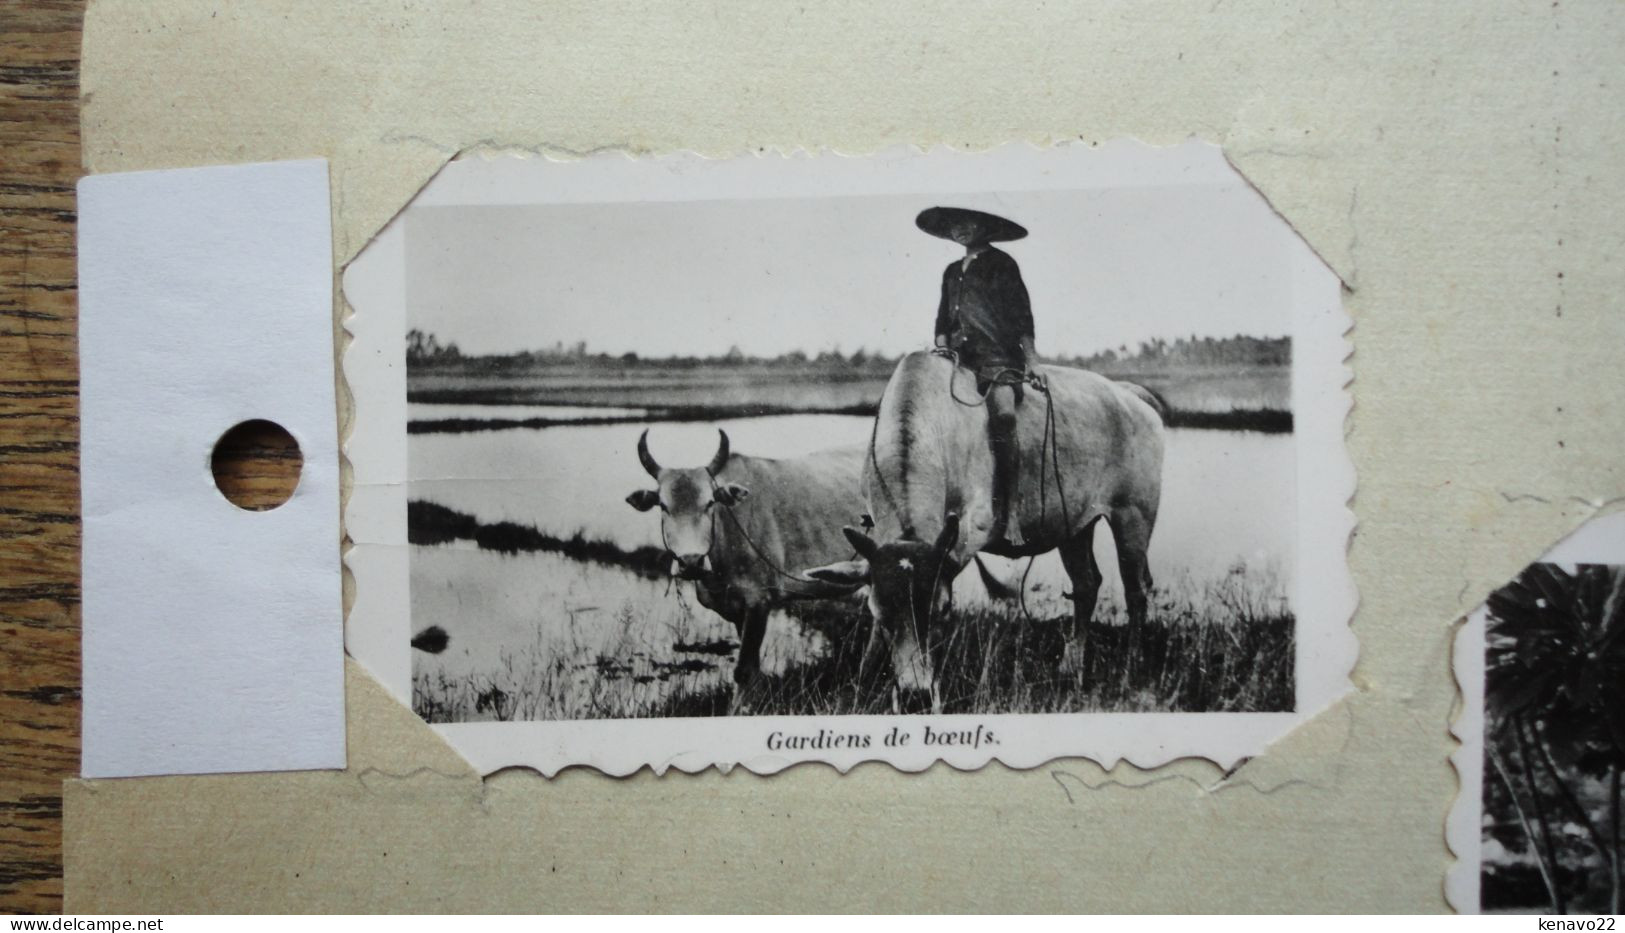 assez rare 10 petites photos ( 6,5 x 4 cm ) du vietnam année 1955 ( les photos sont pas collée )